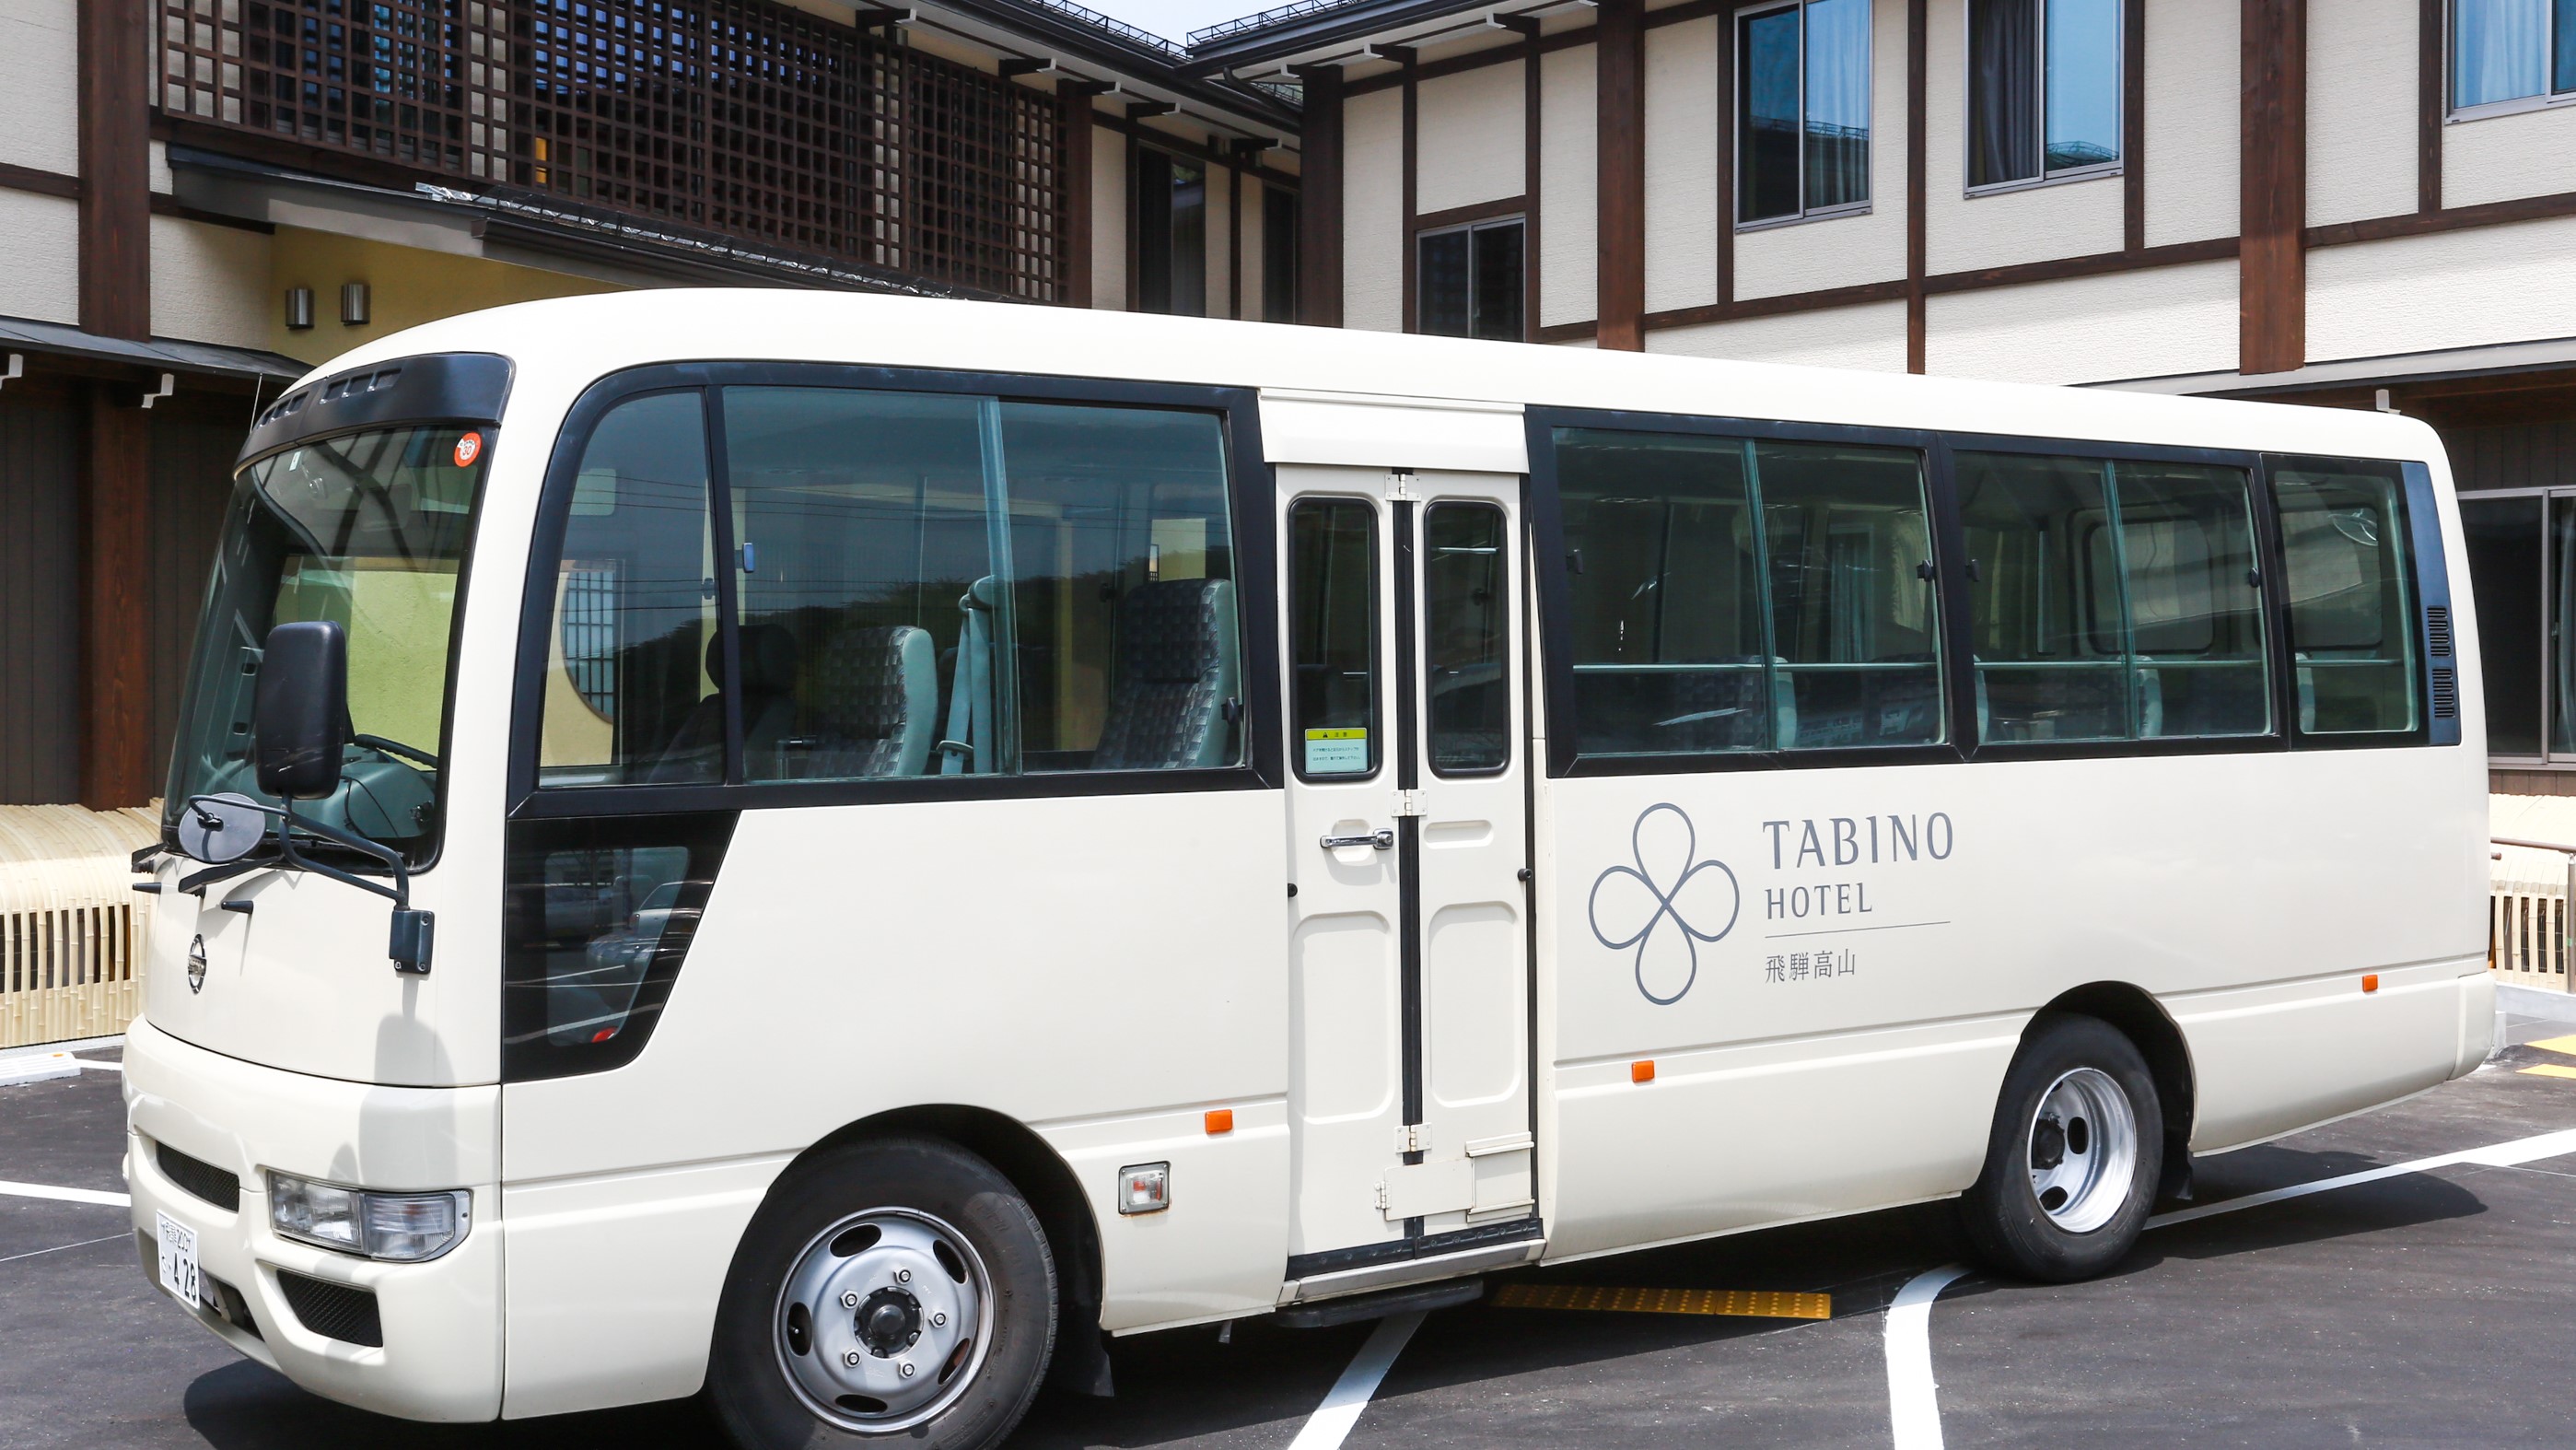 高山駅⇔ホテルの無料送迎バス運行